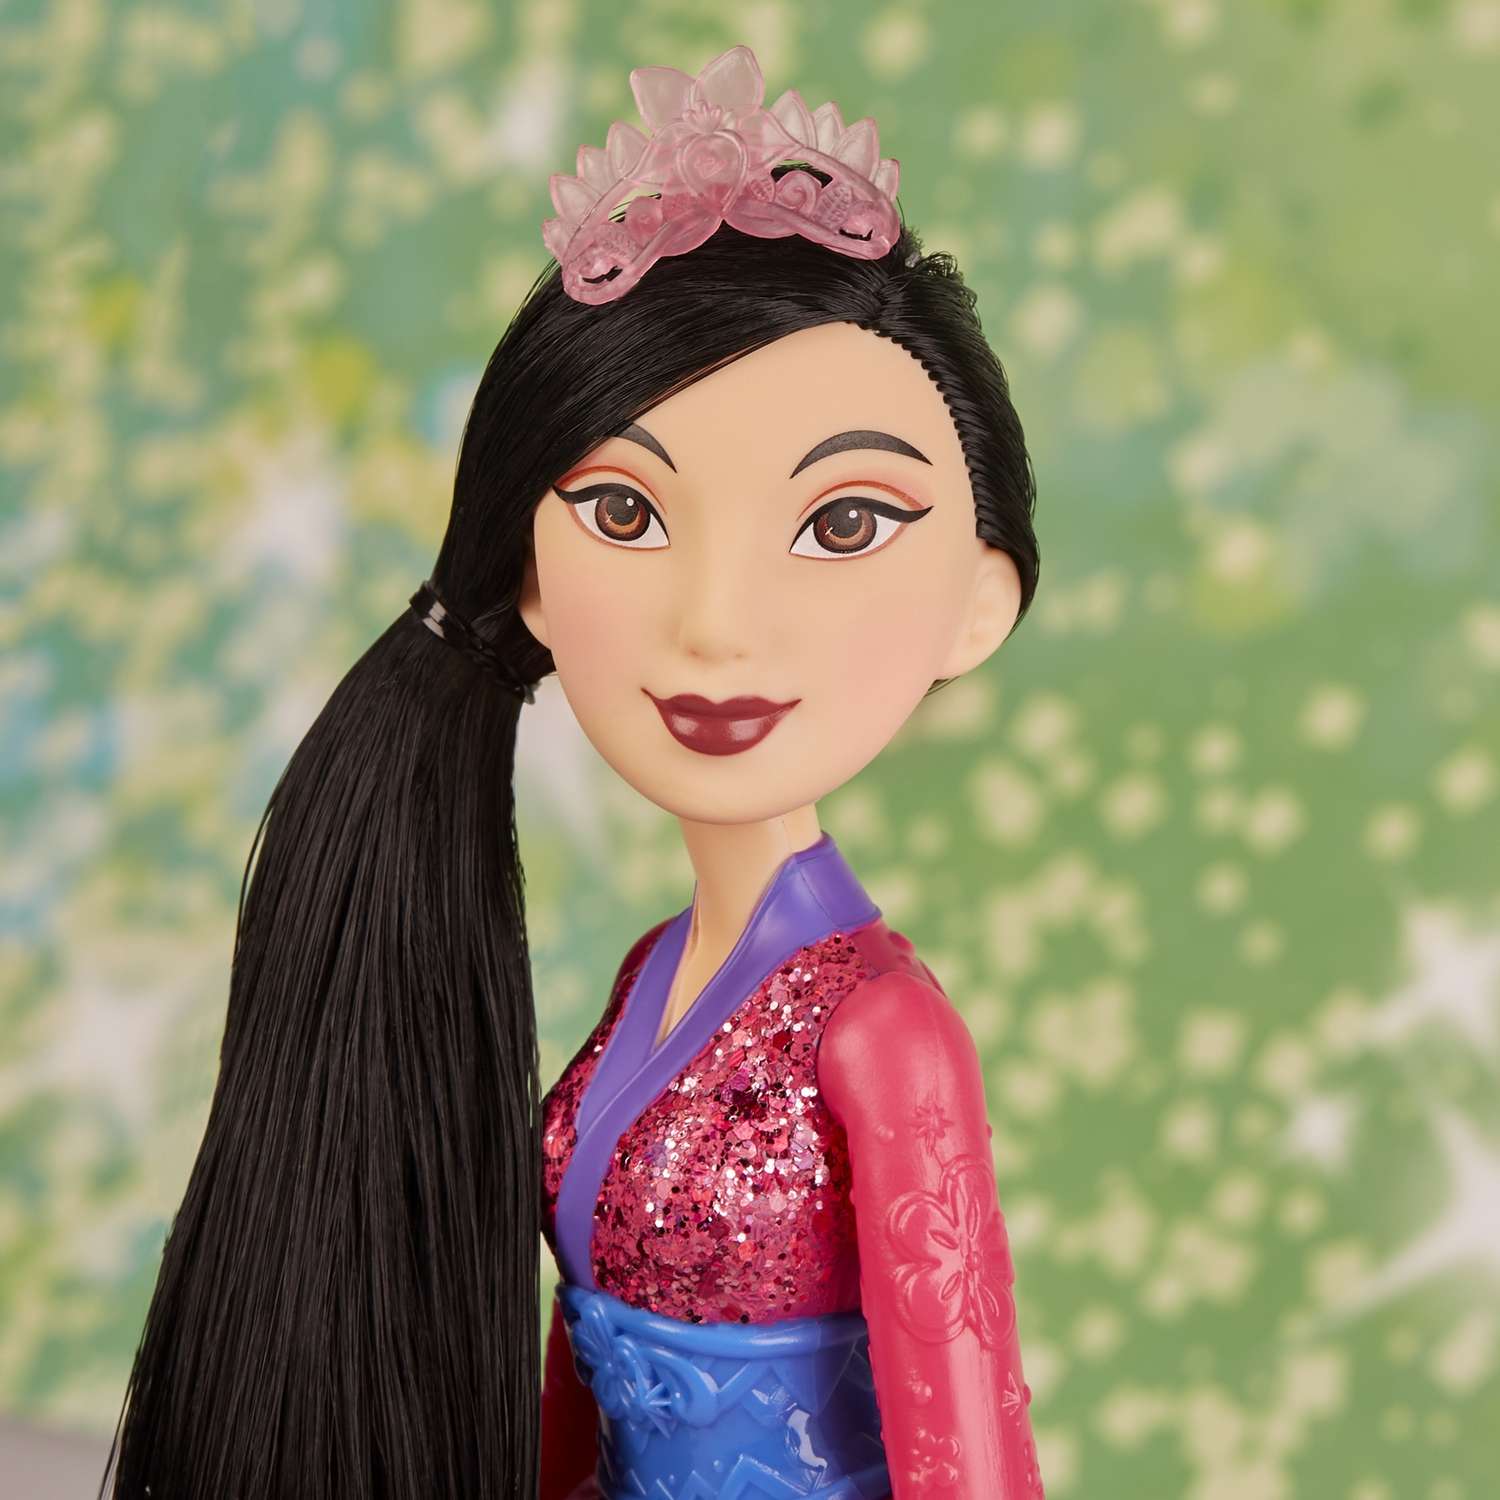 Кукла Disney Princess Hasbro C Мулан E4167EU4 E4022EU4 - фото 18